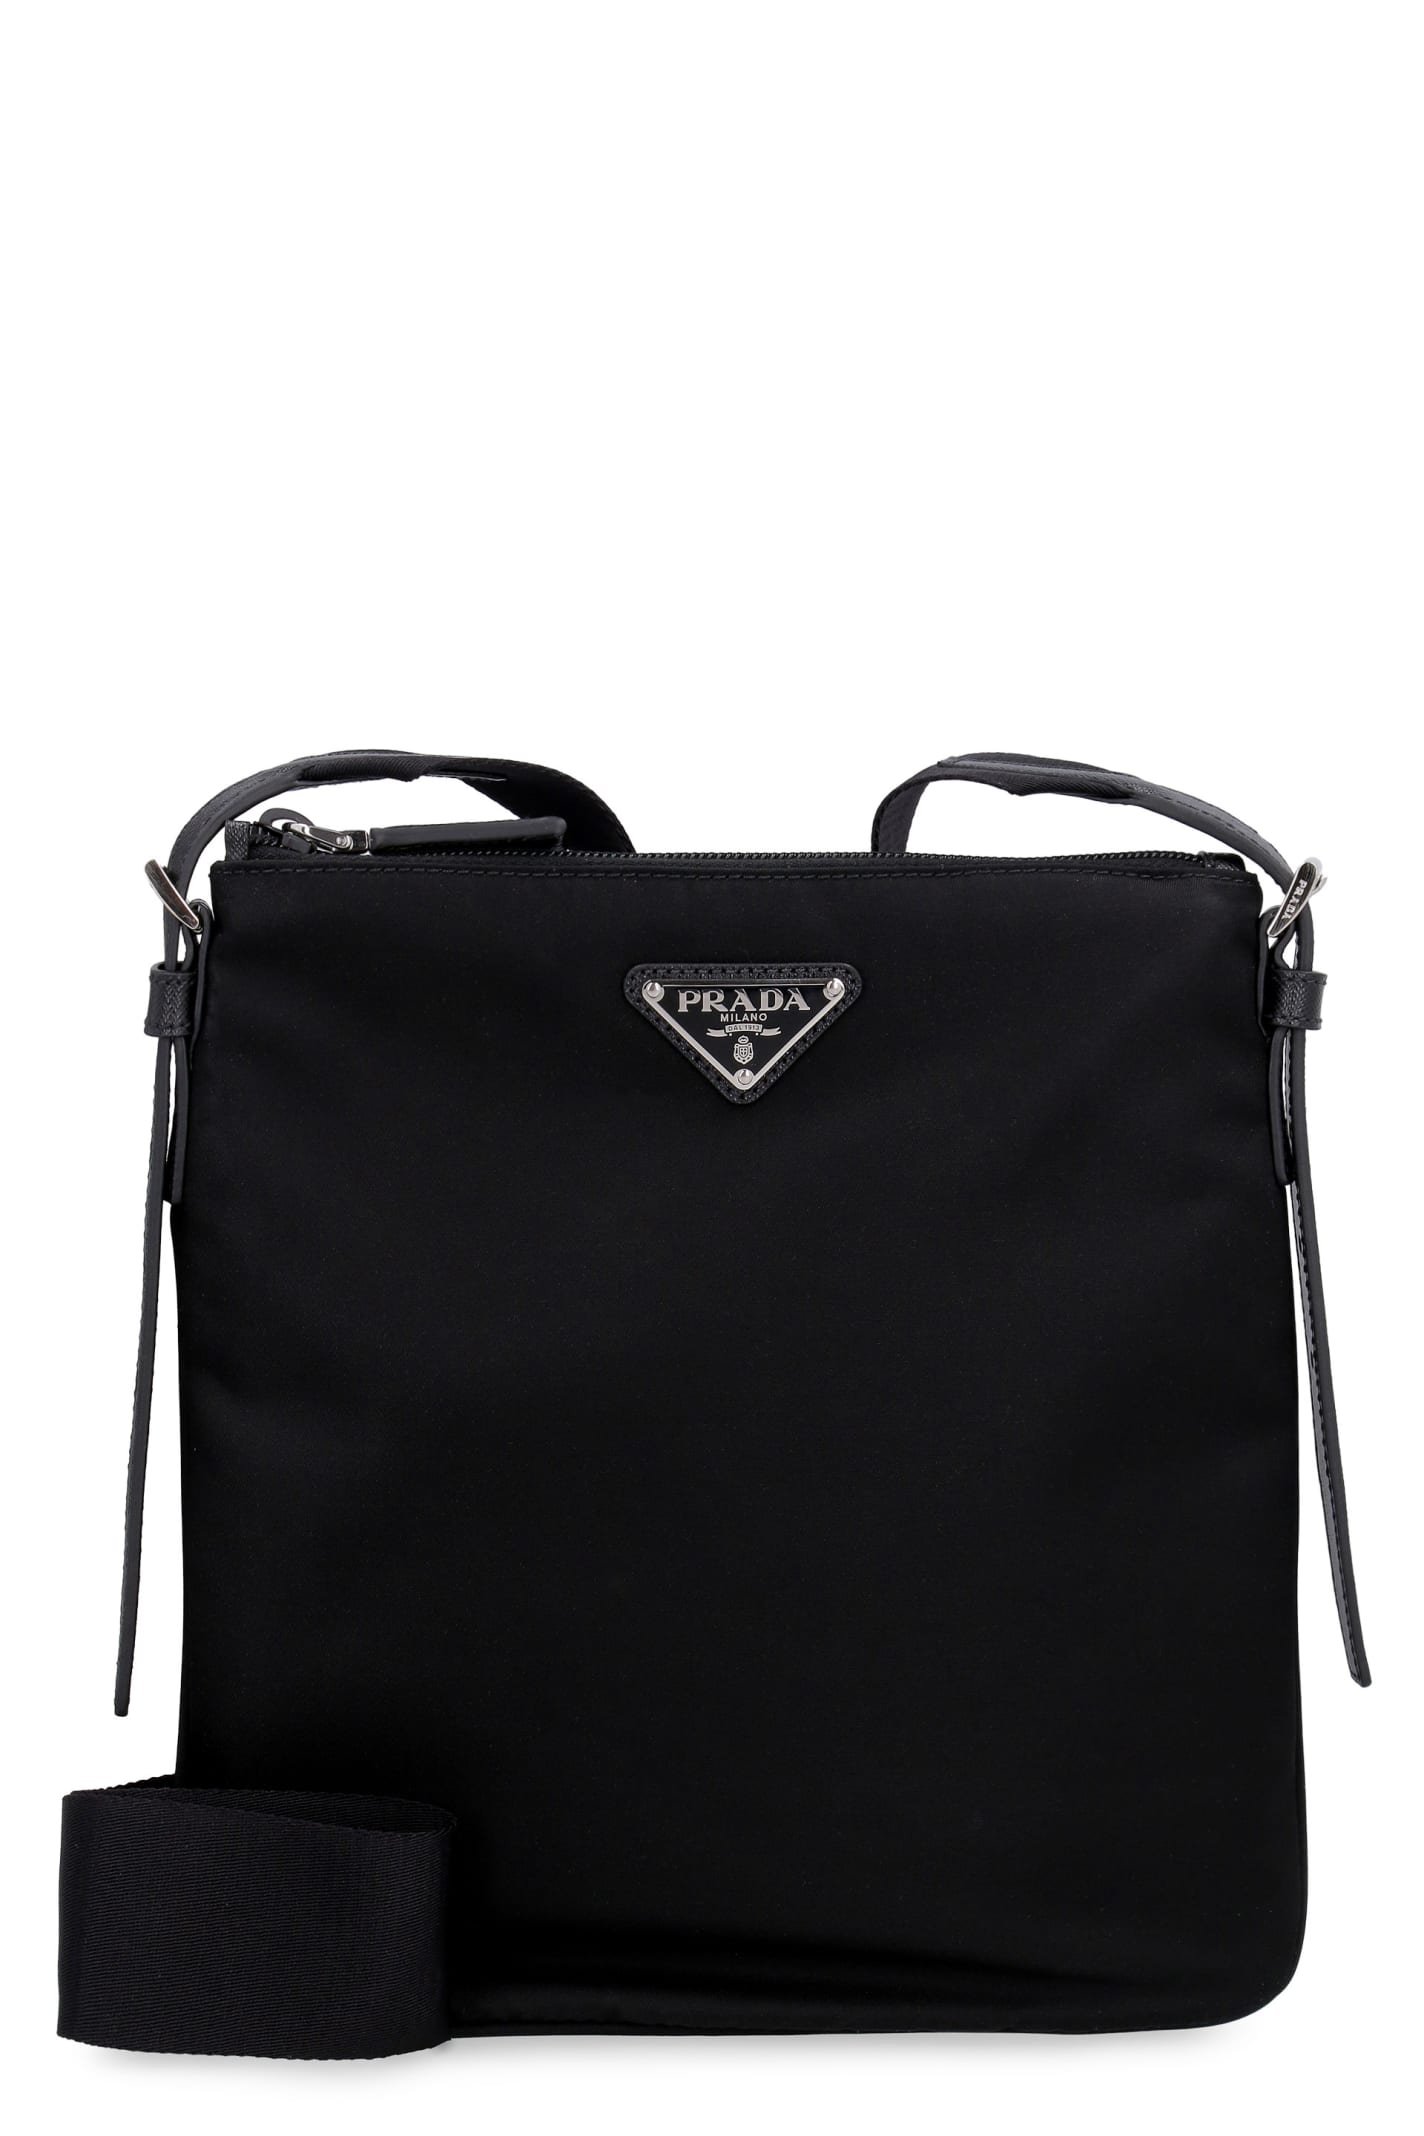 Prada Fabric Bandoleer Bag In Black